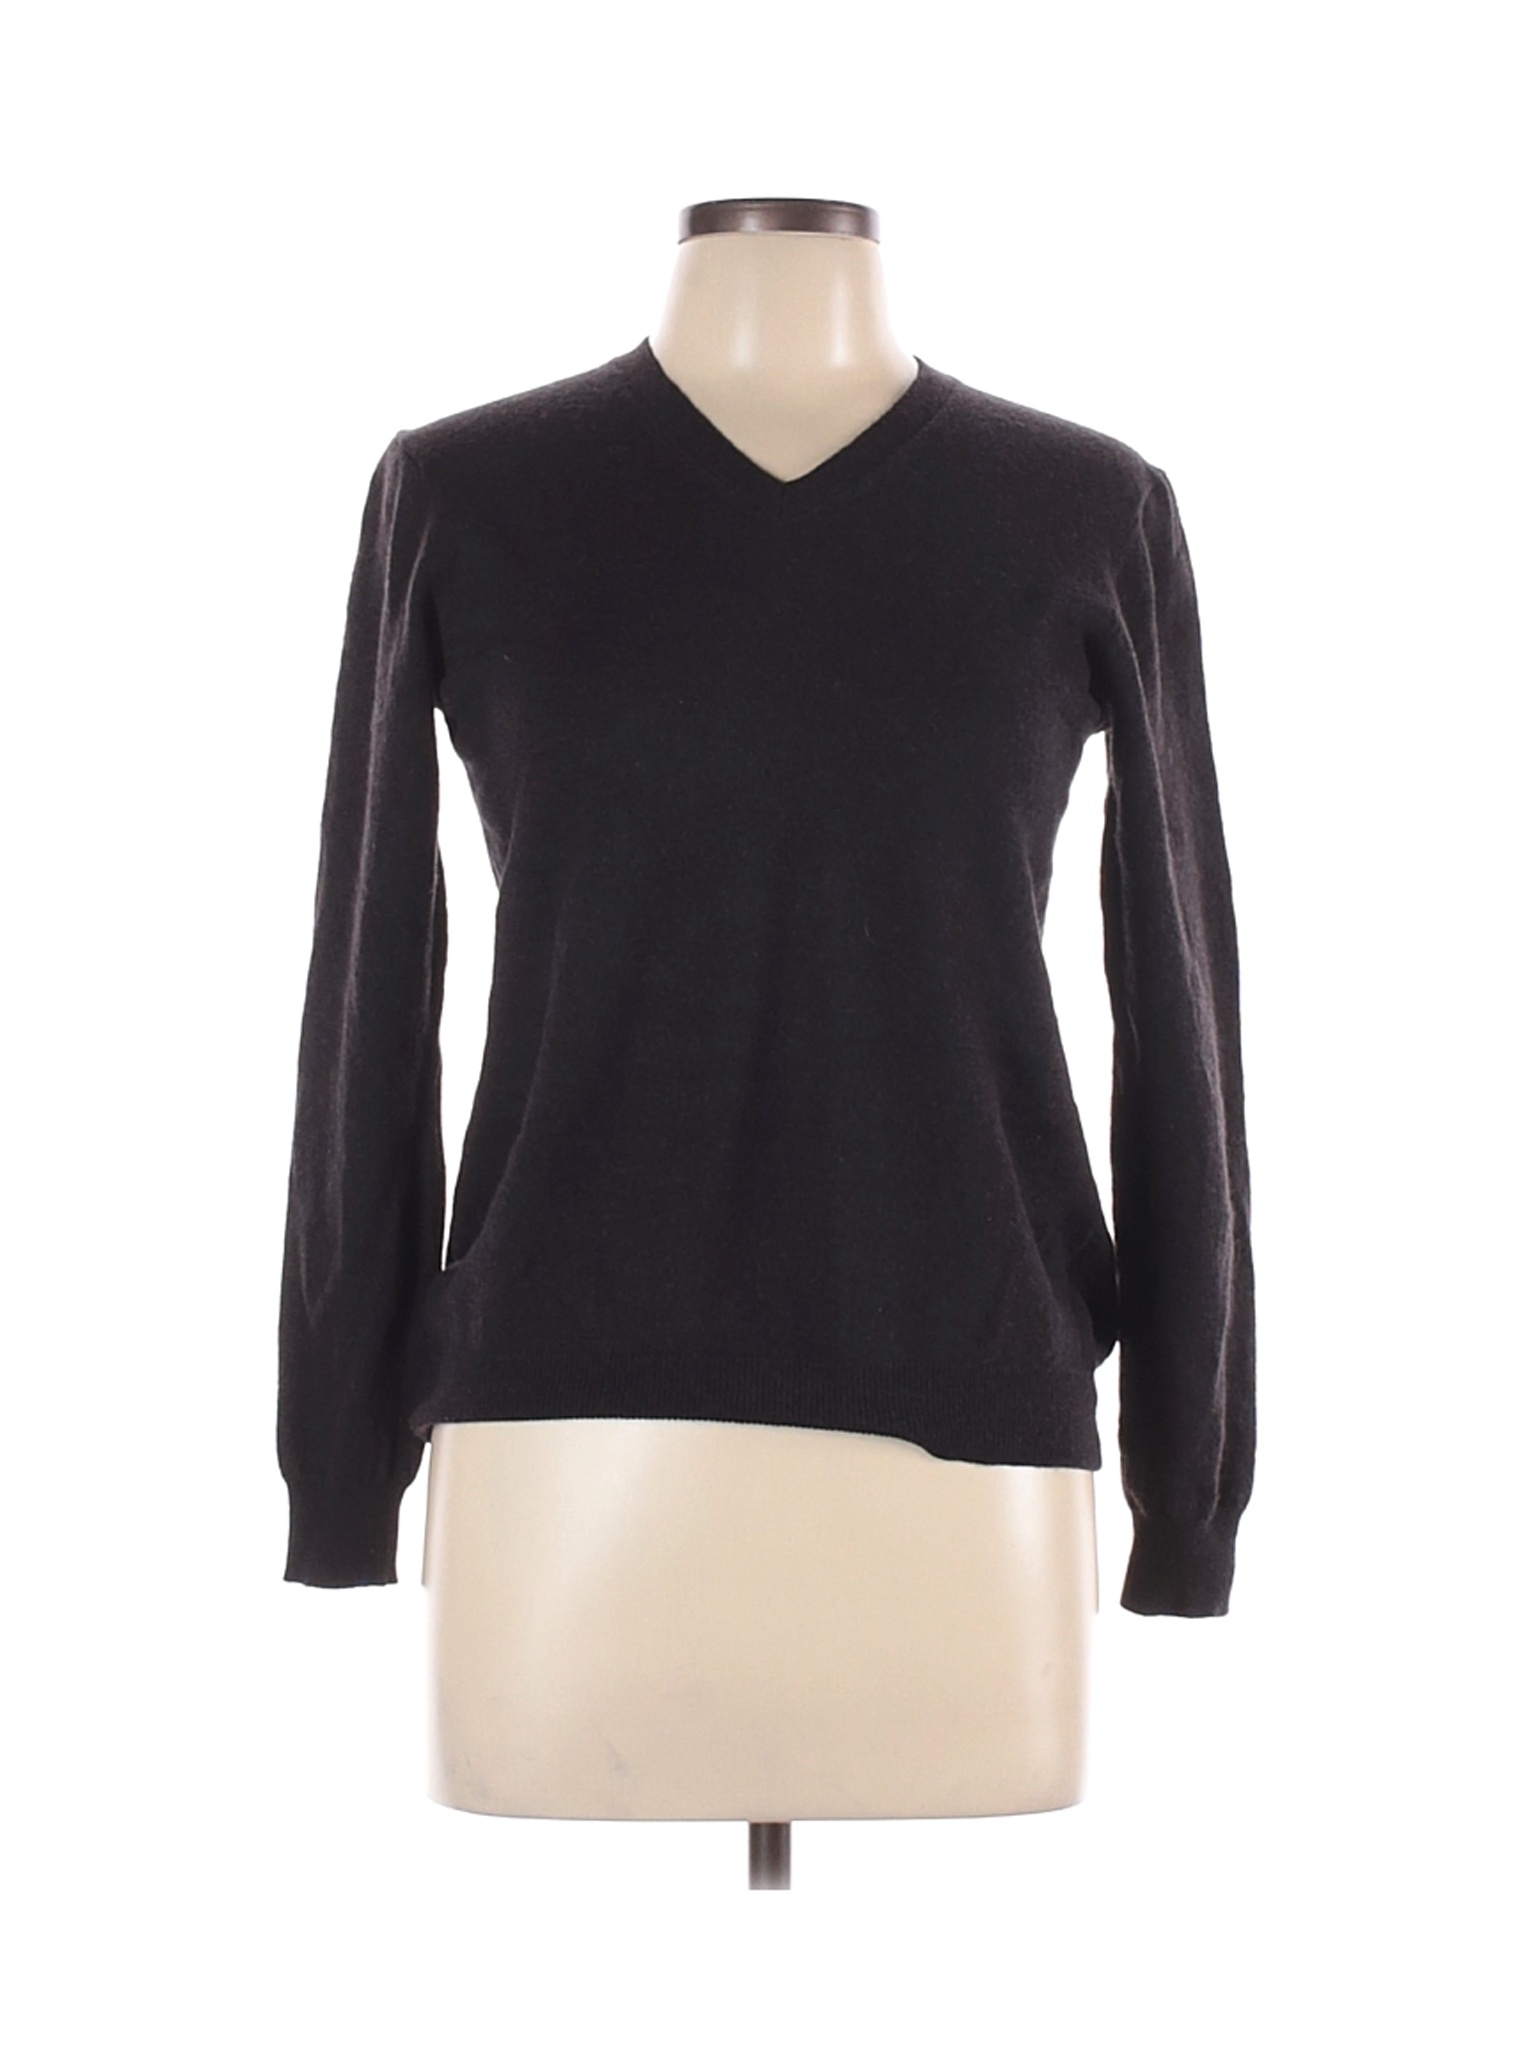 Joseph Abboud Women Black Wool Pullover Sweater L | eBay